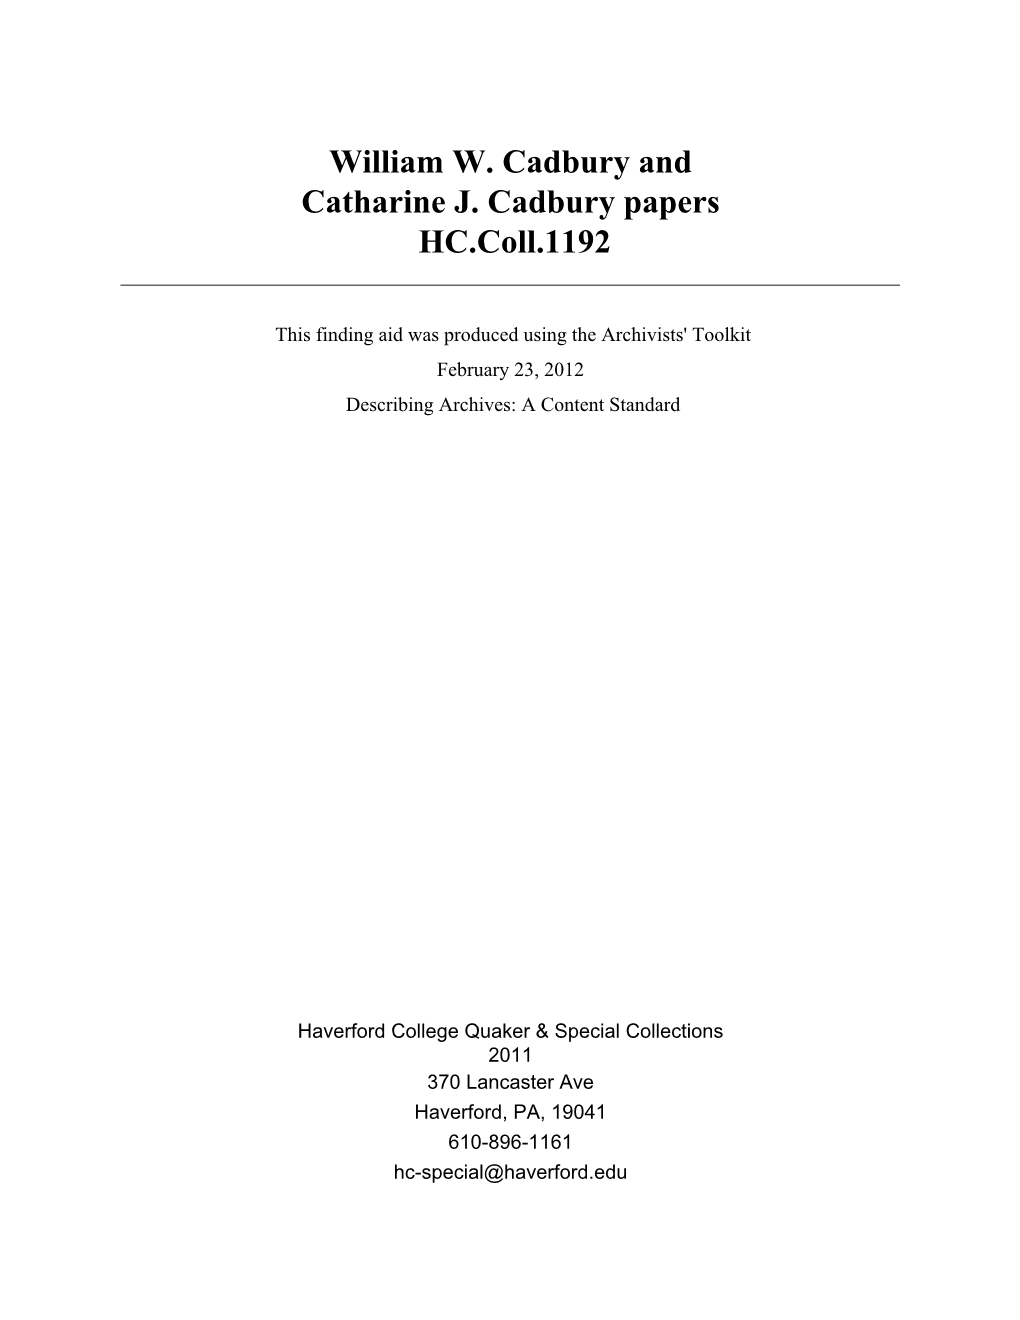 Catharine J. Cadbury Papers HC.Coll.1192